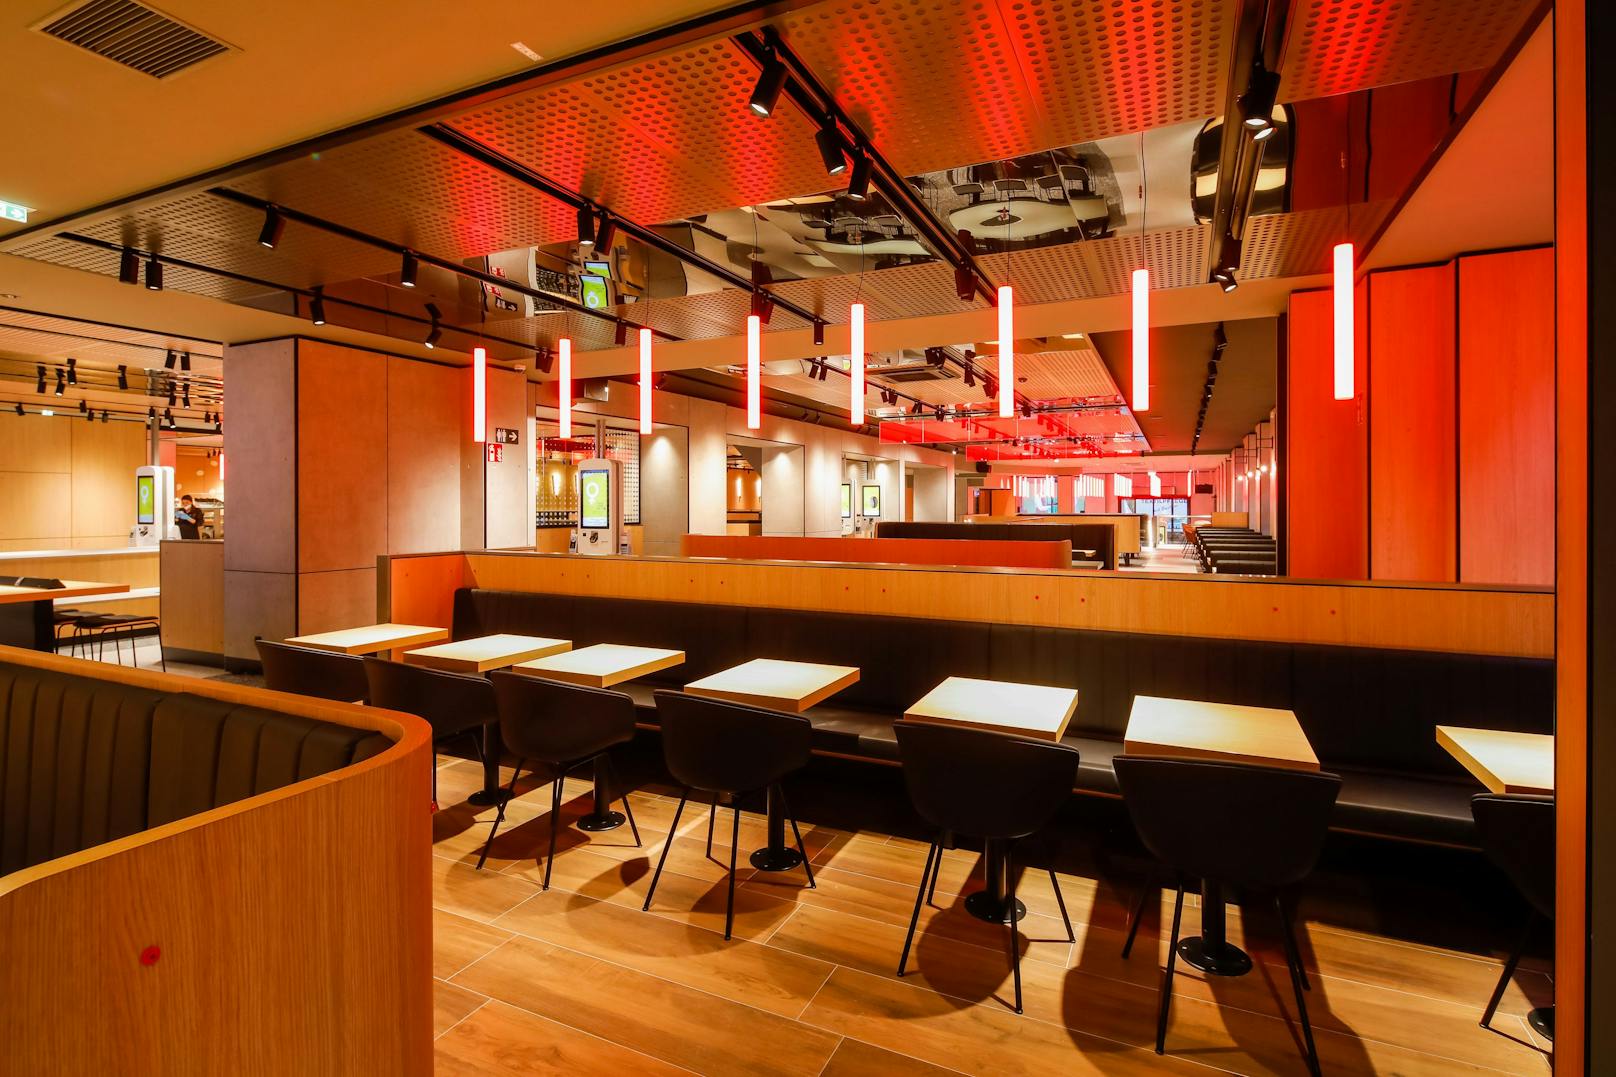 2.300 Quadratmeter Nutzfläche, knapp 500 Sitzplätze und 30 Bestellmöglichkeiten: Der neue Urban Flagship Store auf der Mariahilfer Straße 85 ist das größte und modernste McDonald’s Restaurant Österreichs.